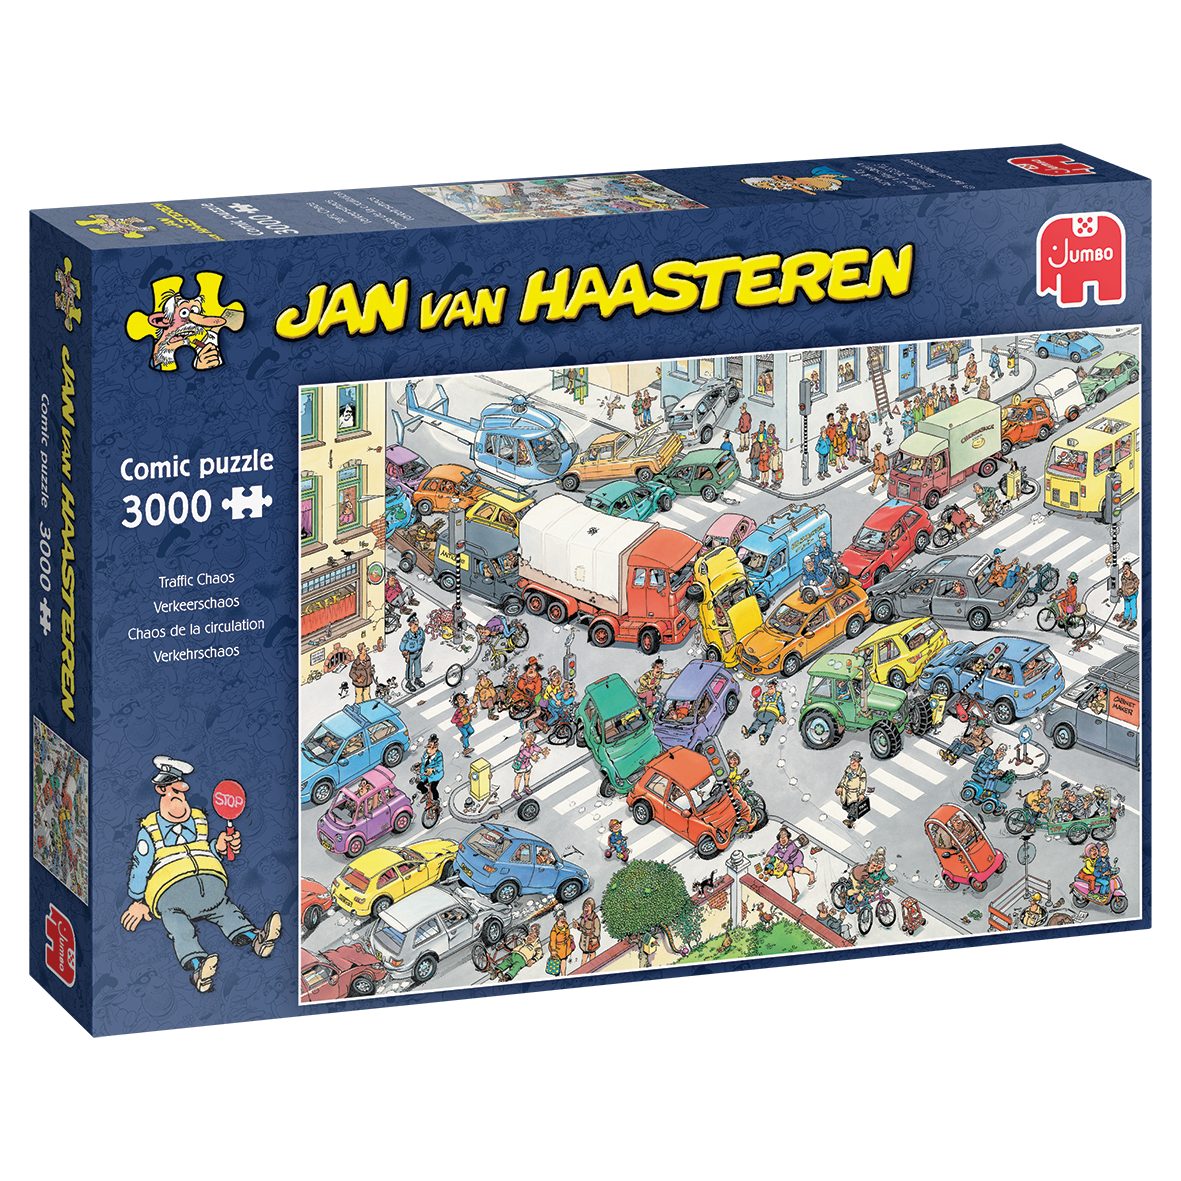 Europe Puzzle, Haasteren Spiele in Jumbo van Puzzleteile, Verkehrschaos Puzzle 3000 Made Jan